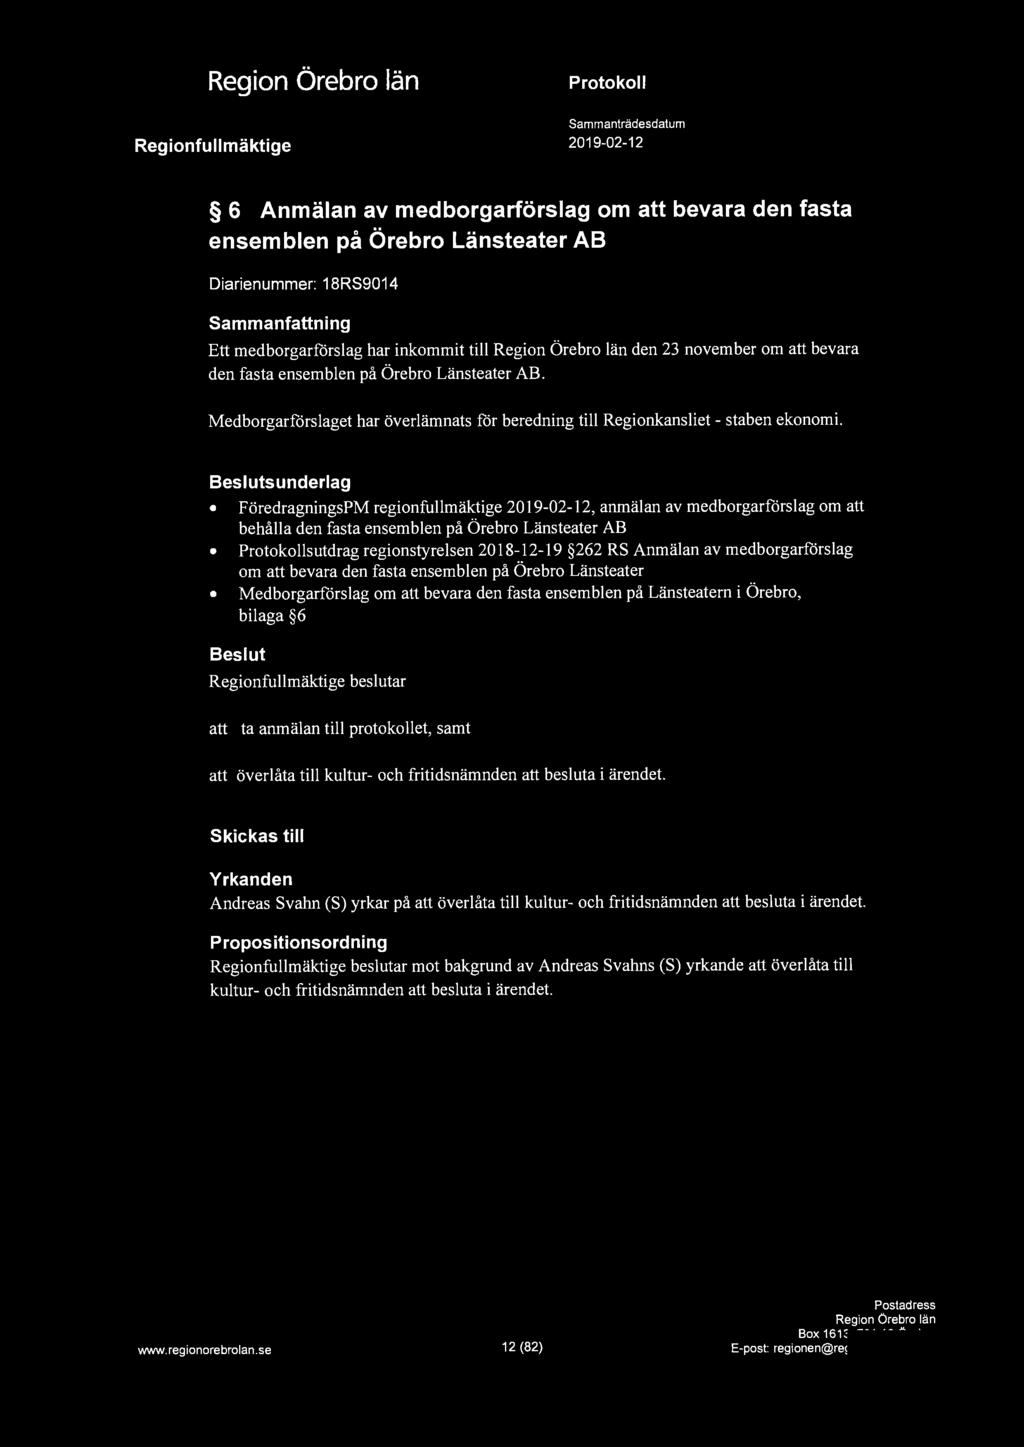 6 Anmälan av medborgarförslag om att bevara den fasta ensemblen på Örebro Länsteater AB Diarienummer: 18RS9014 Sammanfattning Ett medborgarförslag har inkommit till den 23 november om att bevara den